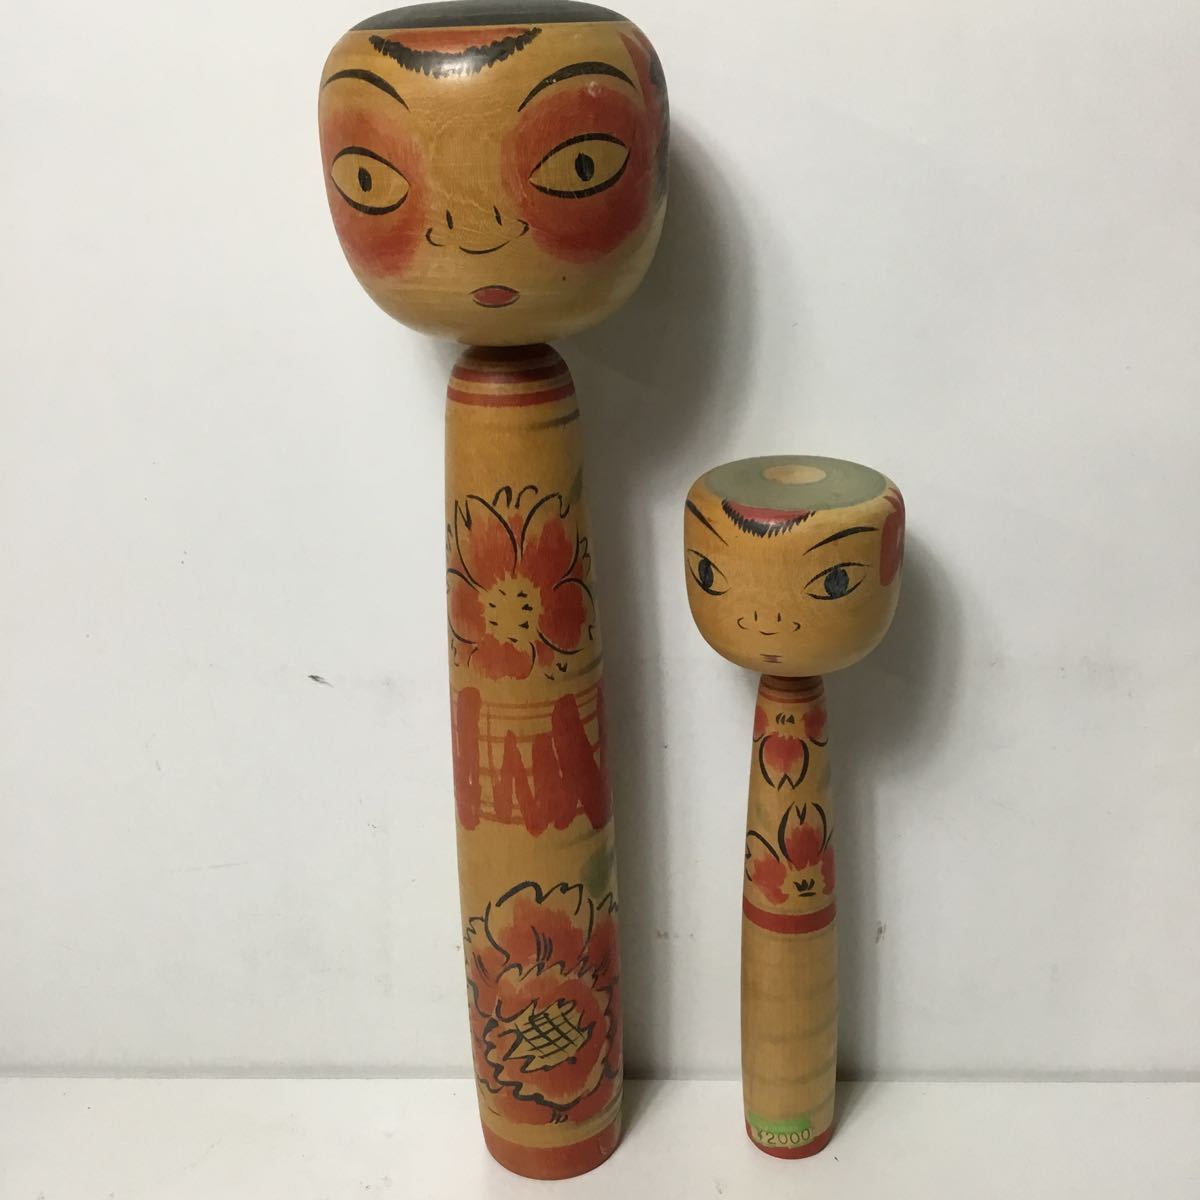 伝統こけし まとめて 2個セット 郷土玩具 伝統工芸 瀬谷重治 こけし 日本人形 骨董品 古玩 TS2A10_画像1